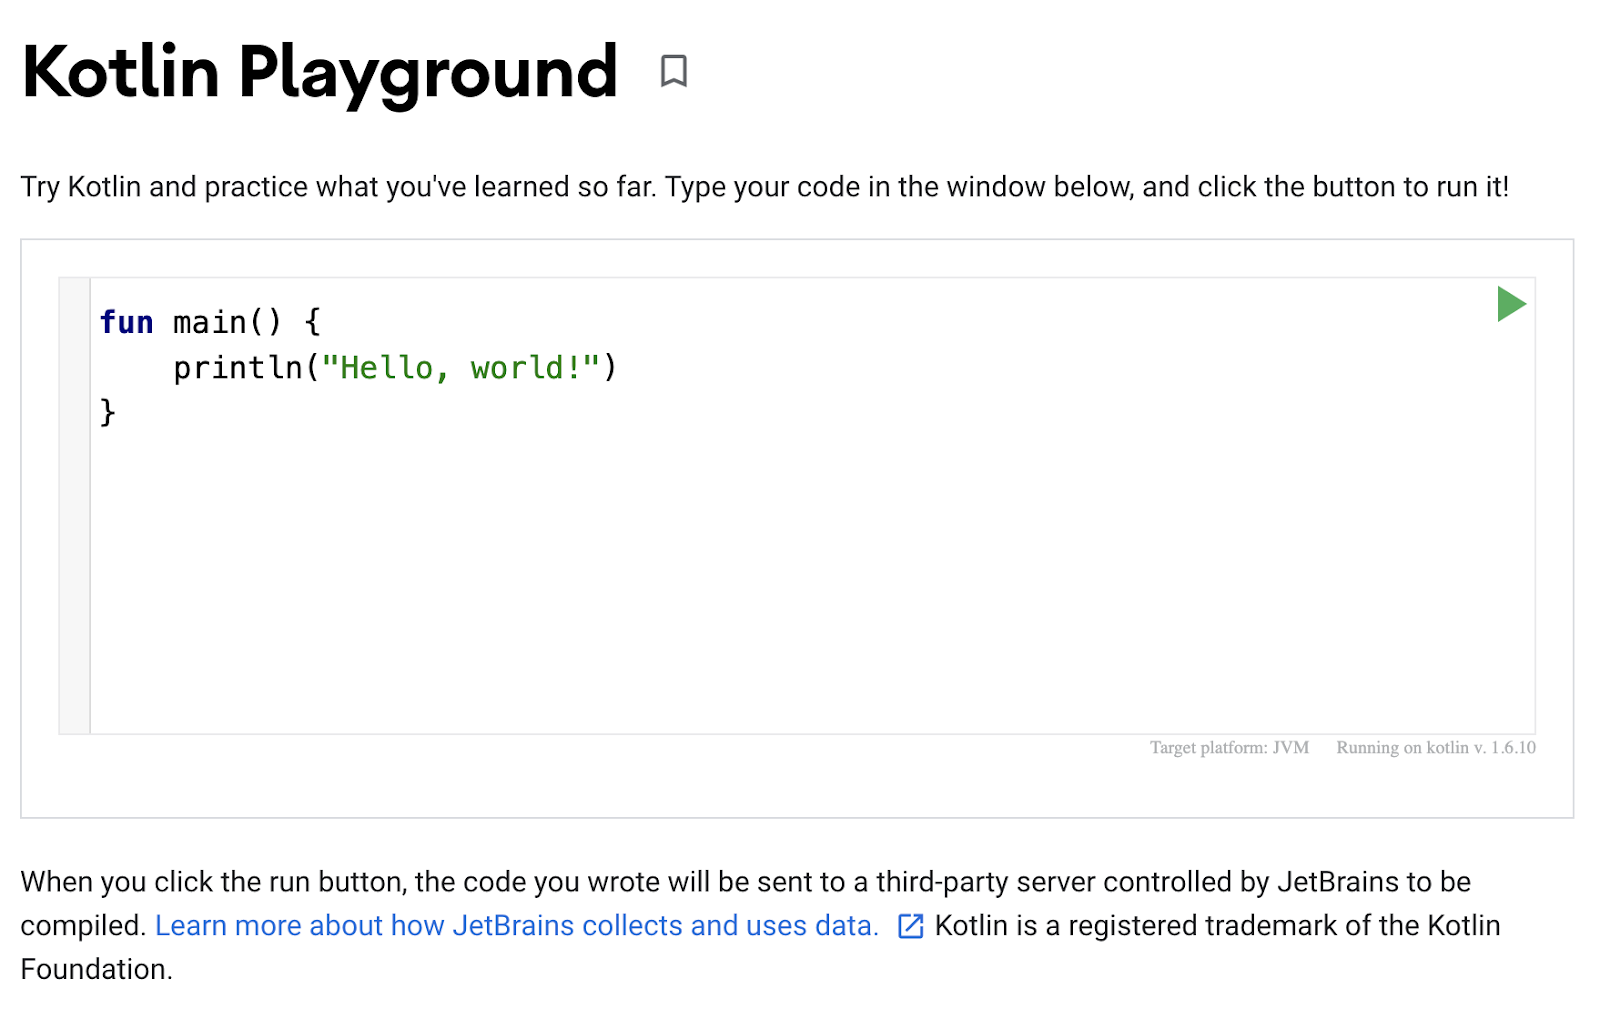 Uma captura de tela do Playground Kotlin sendo mostrada. O editor de código mostra um programa simples para exibir "Hello, world!" na saída.